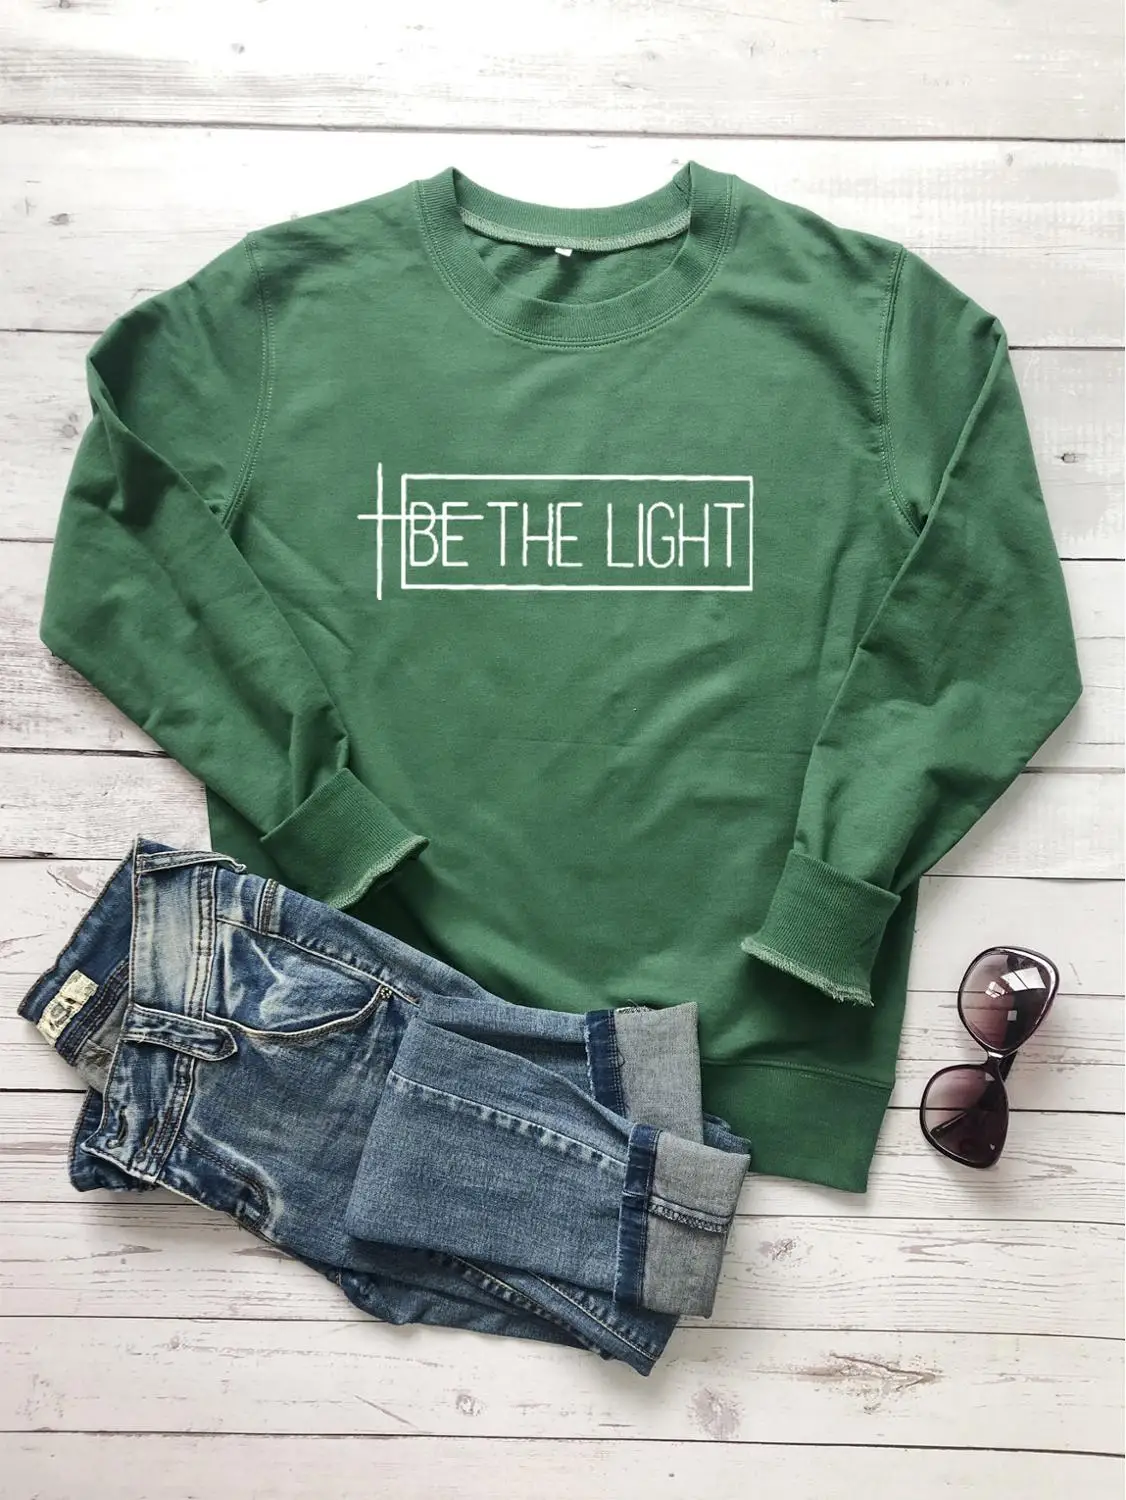 Be the light Толстовка для женщин религиозный христианский Библейский крещение толстовки слоган Цитата вечерние стильные пуловеры Топы - Цвет: Green-white txt